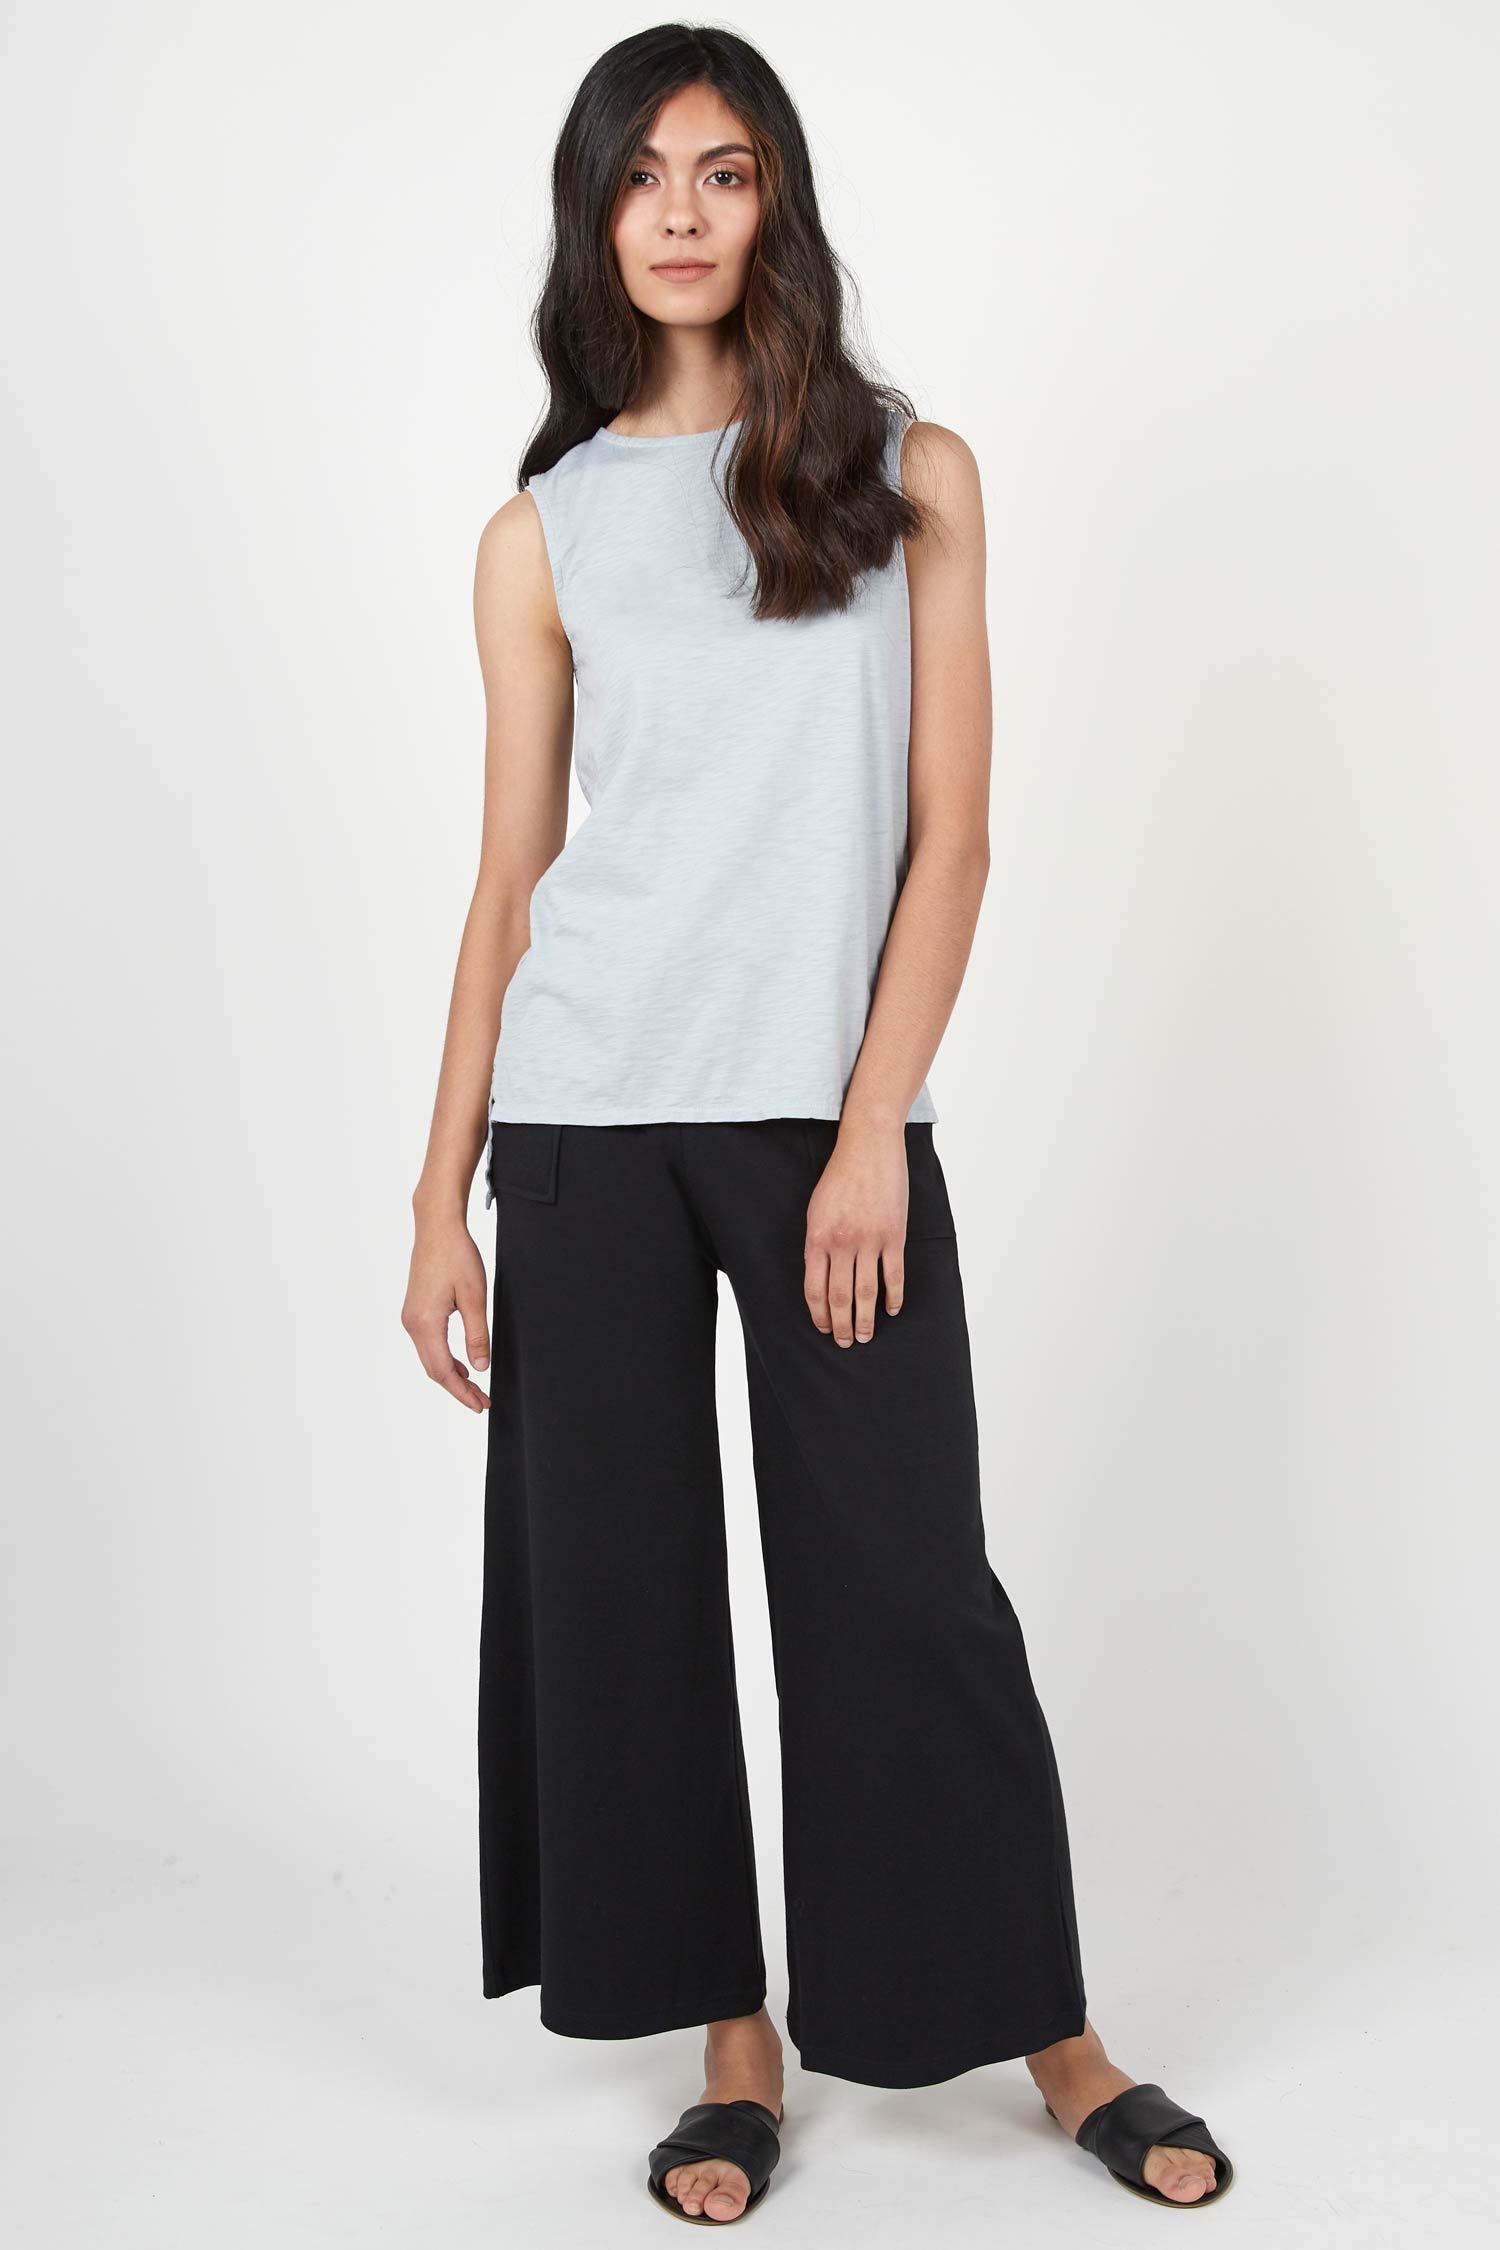 Womens organic cotton pants | Cropped Wide Leg Pant | Black